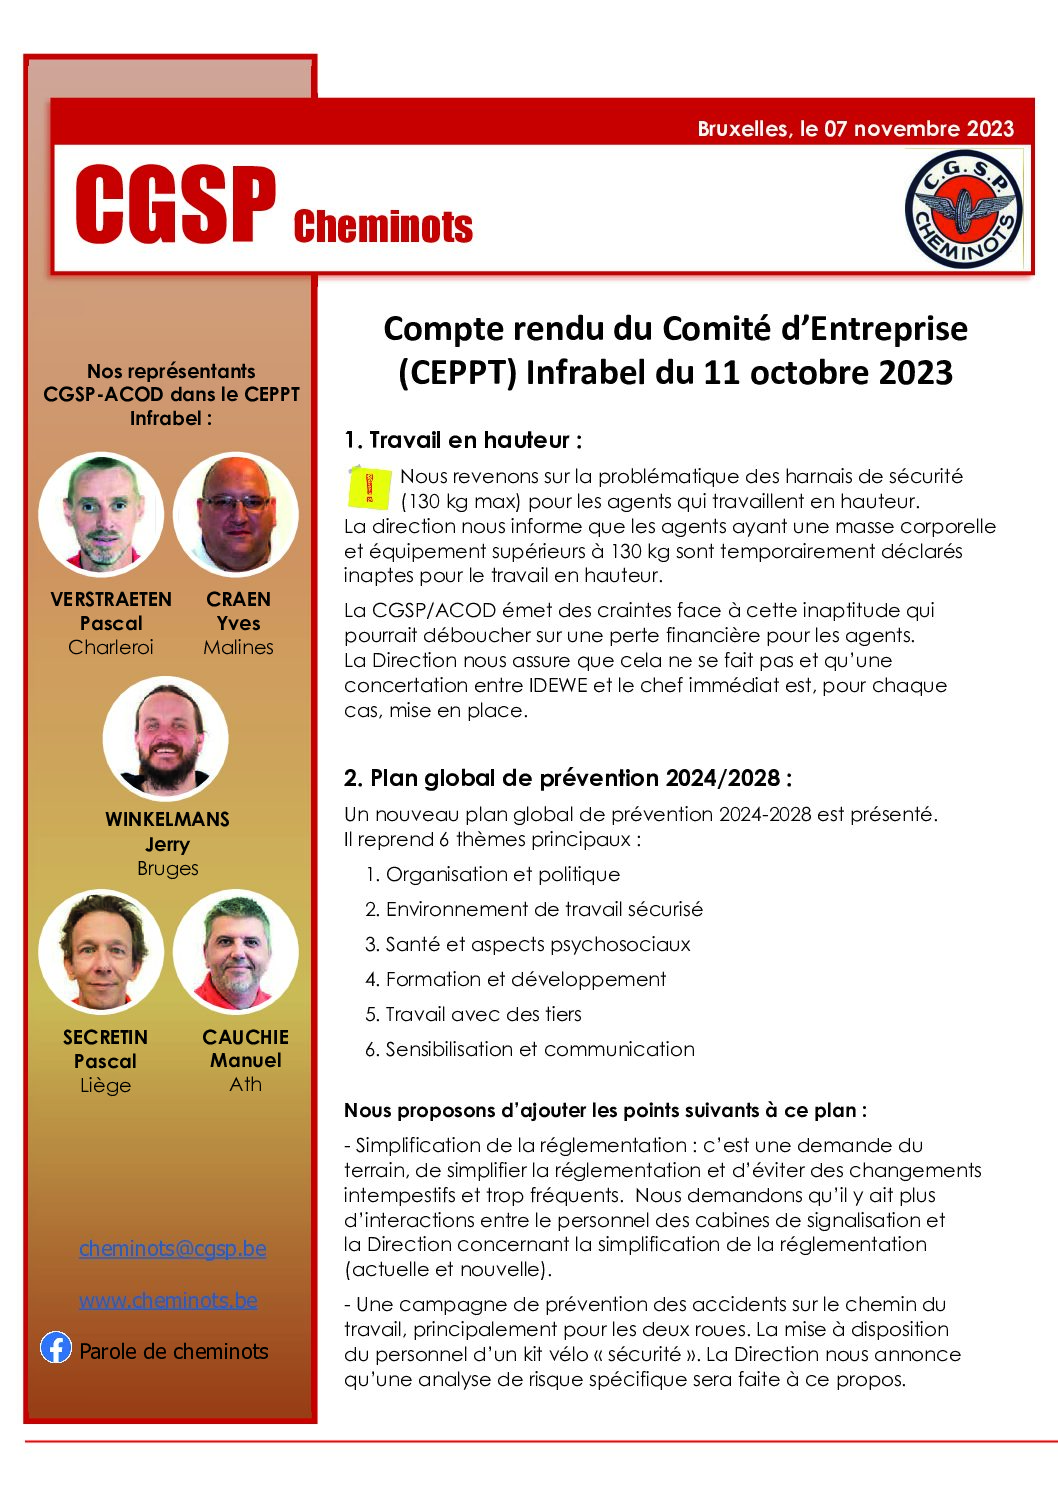 Compte rendu du Comité d’Entreprise (CEPPT) Infrabel du 11 octobre 2023